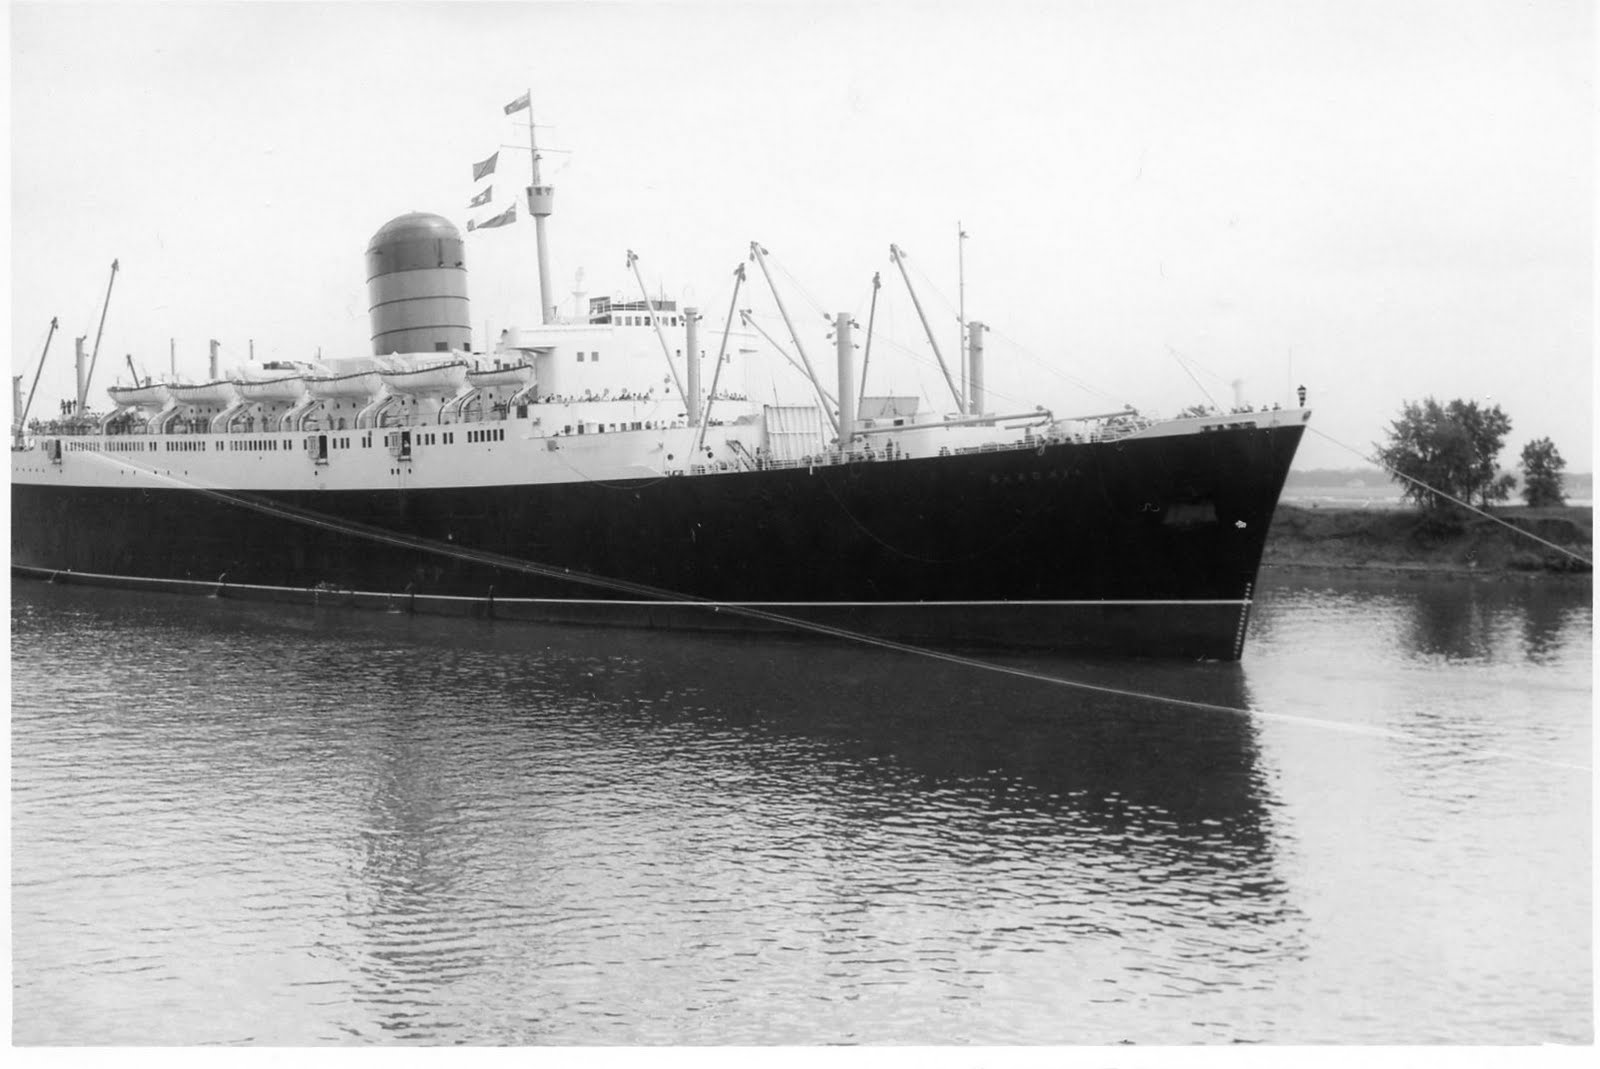 Saxonia_ship-Montreal-June1957.jpg